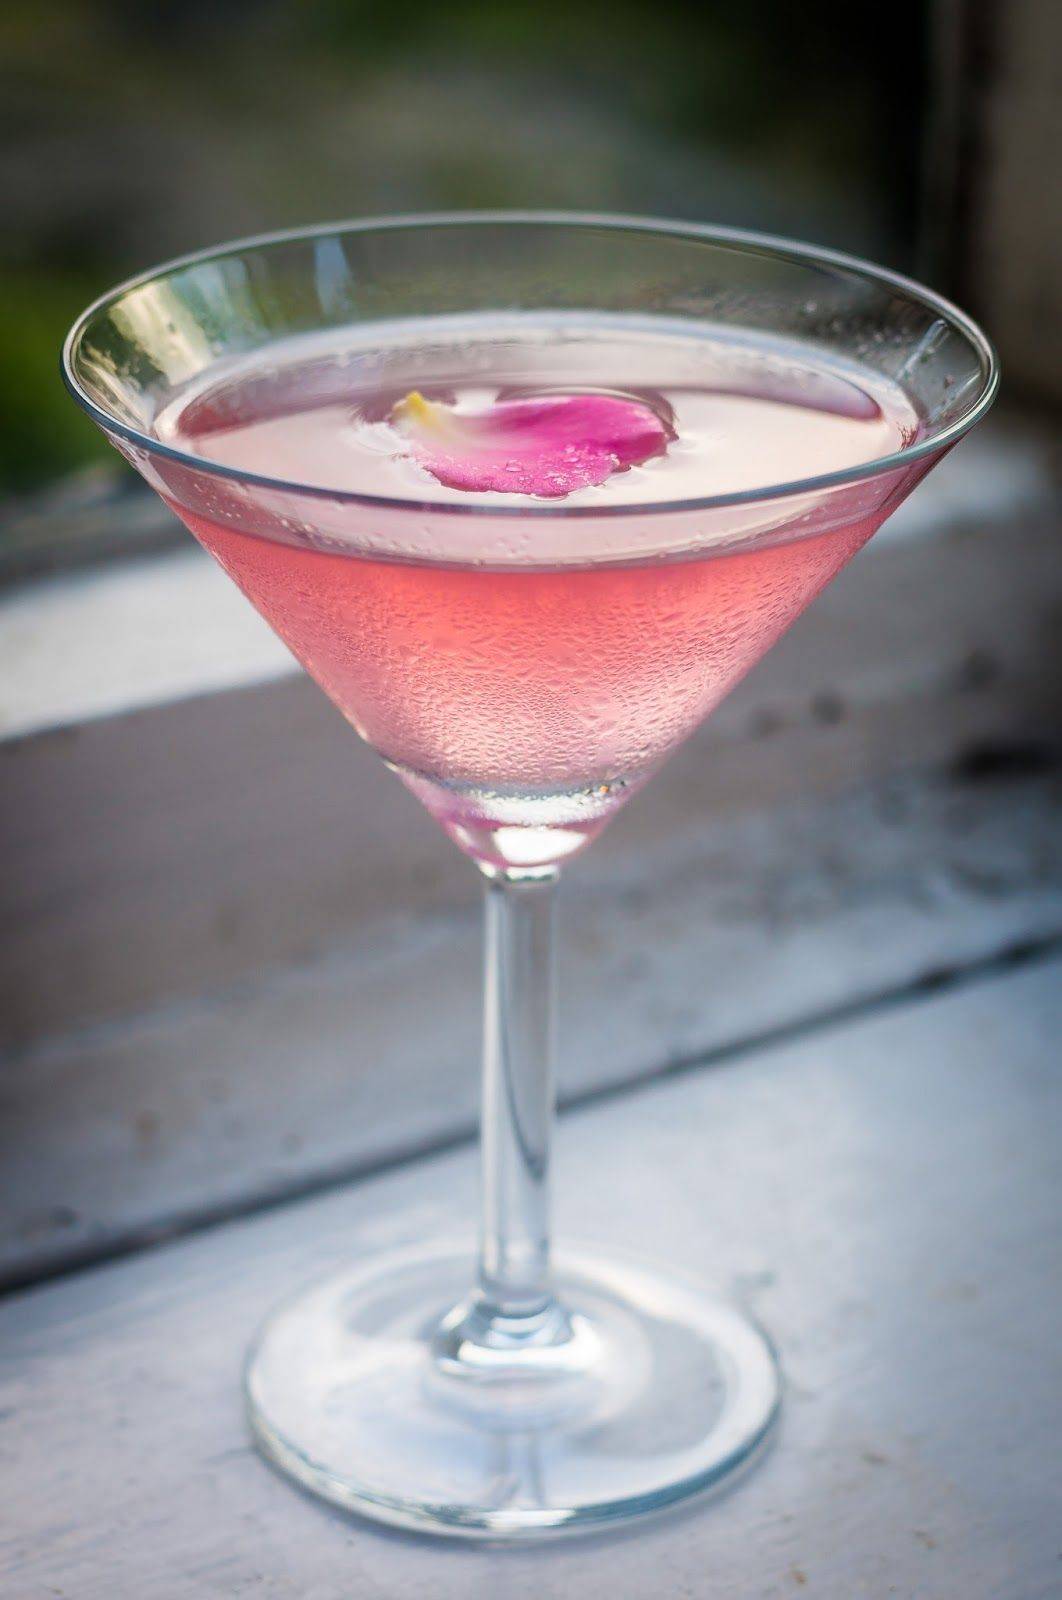 Коктейли с розовым вермутом. Личи Тини коктейль. Алкогольный напиток мартини Роуз. Rose Martini коктейль. Мартини Роуз Вермут коктейль.